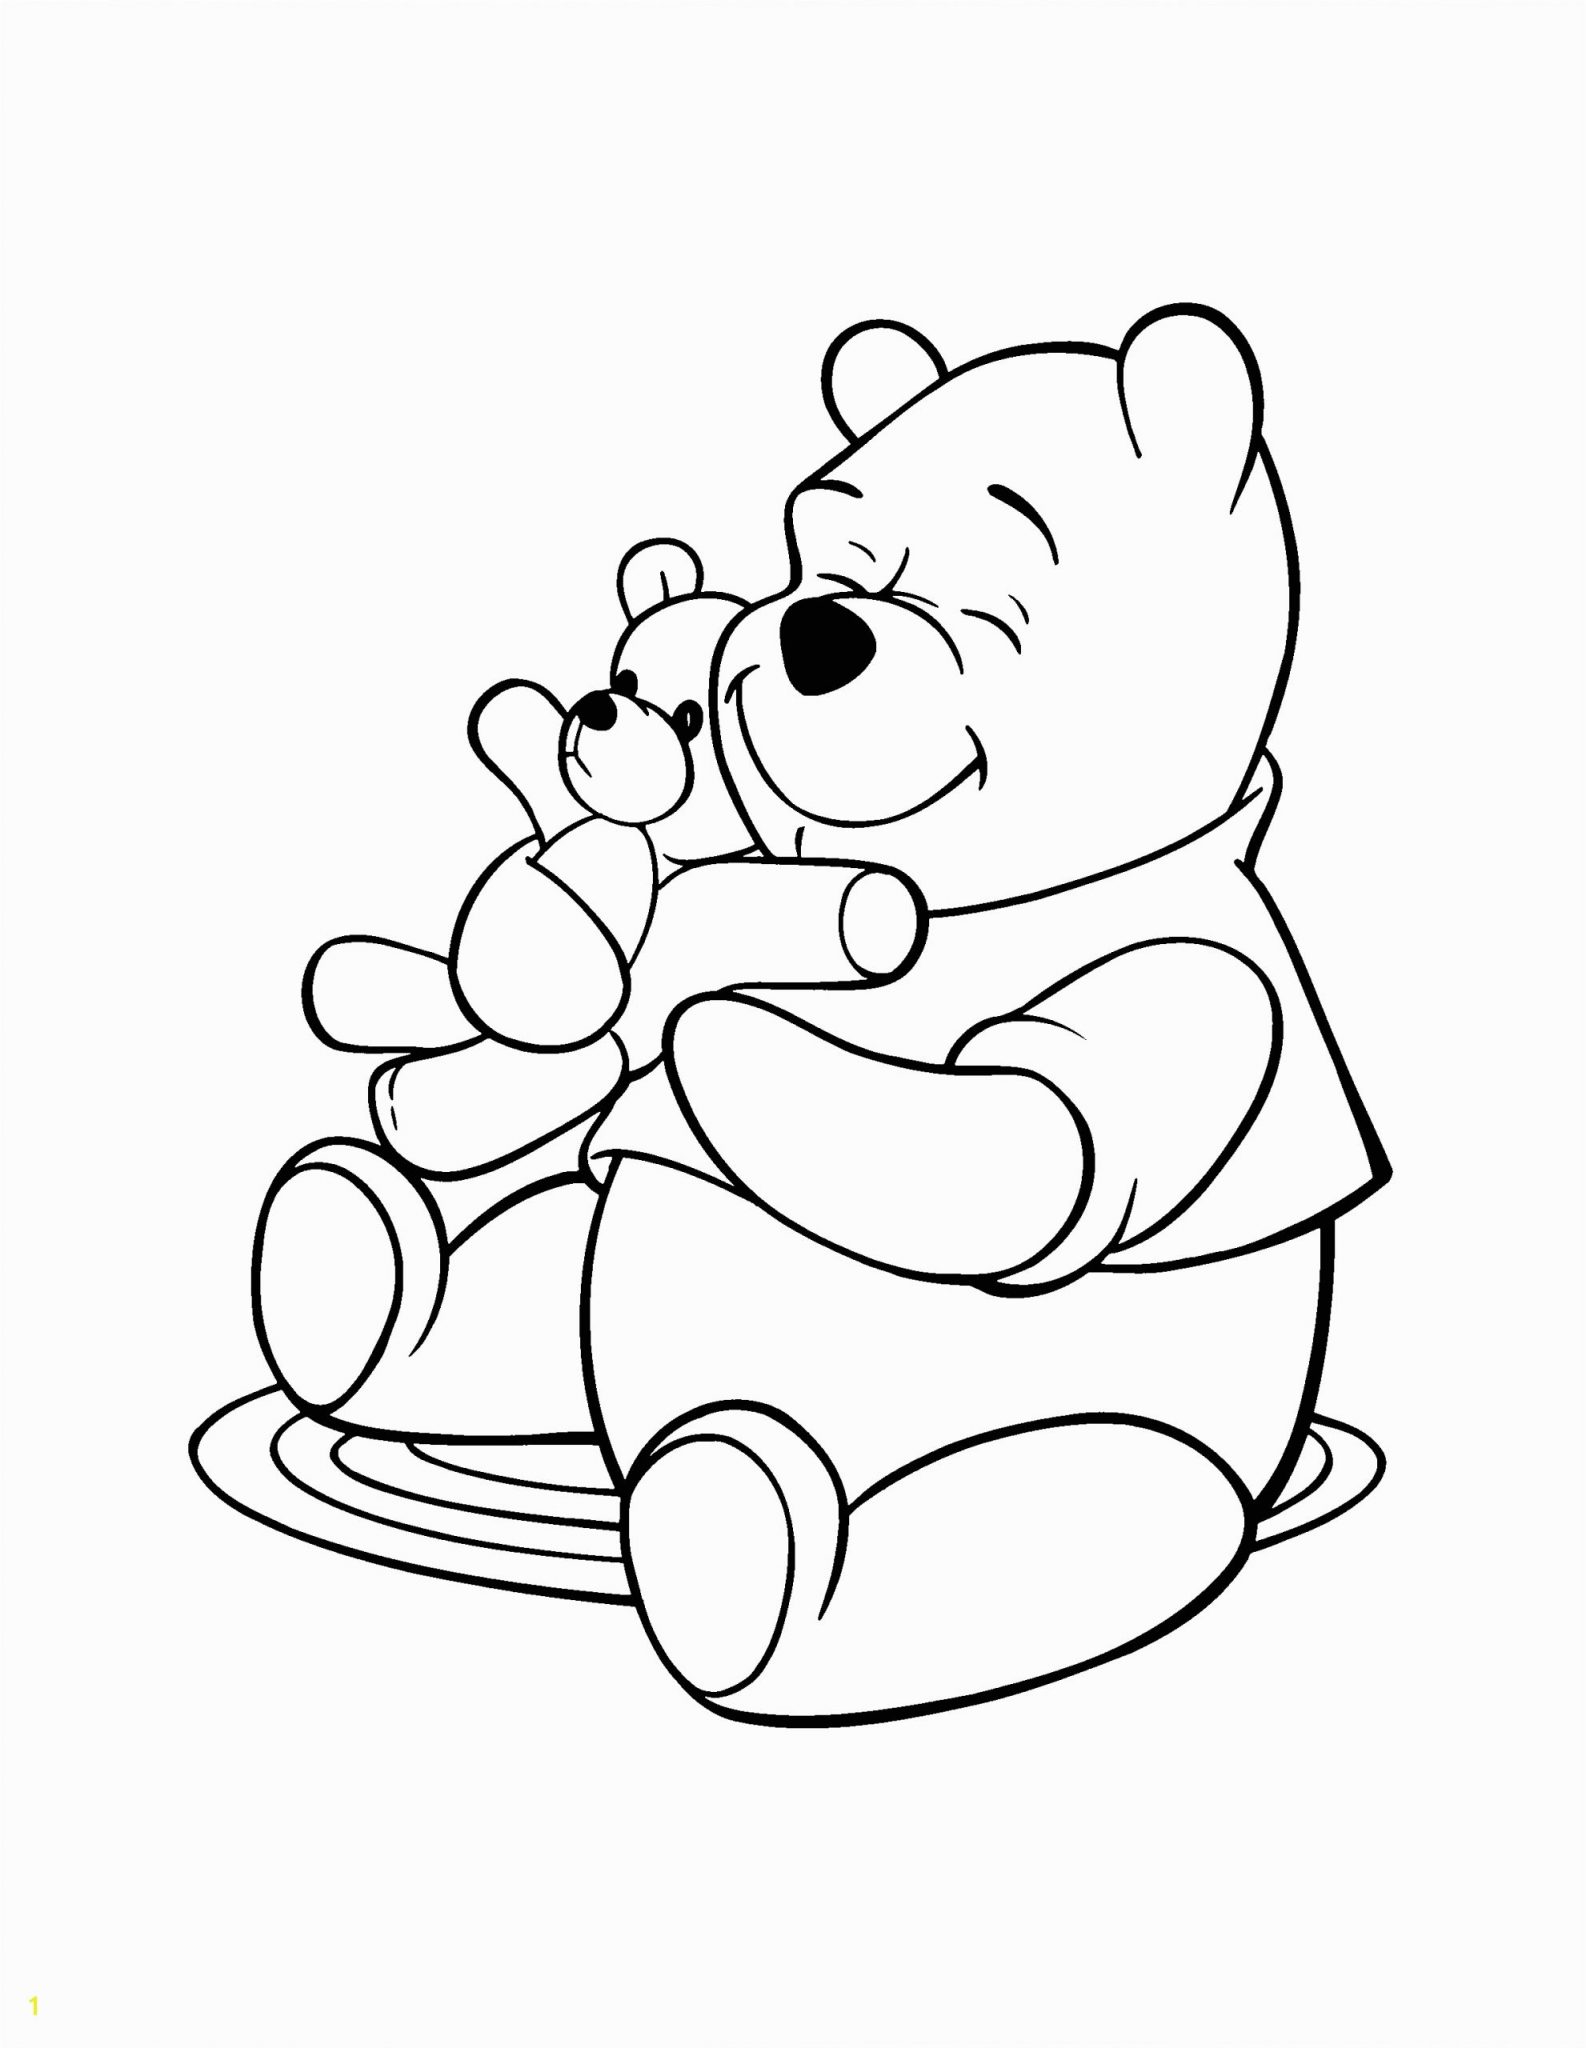 Tranh tô màu gấu Pooh và chú gấu bông đáng yêu